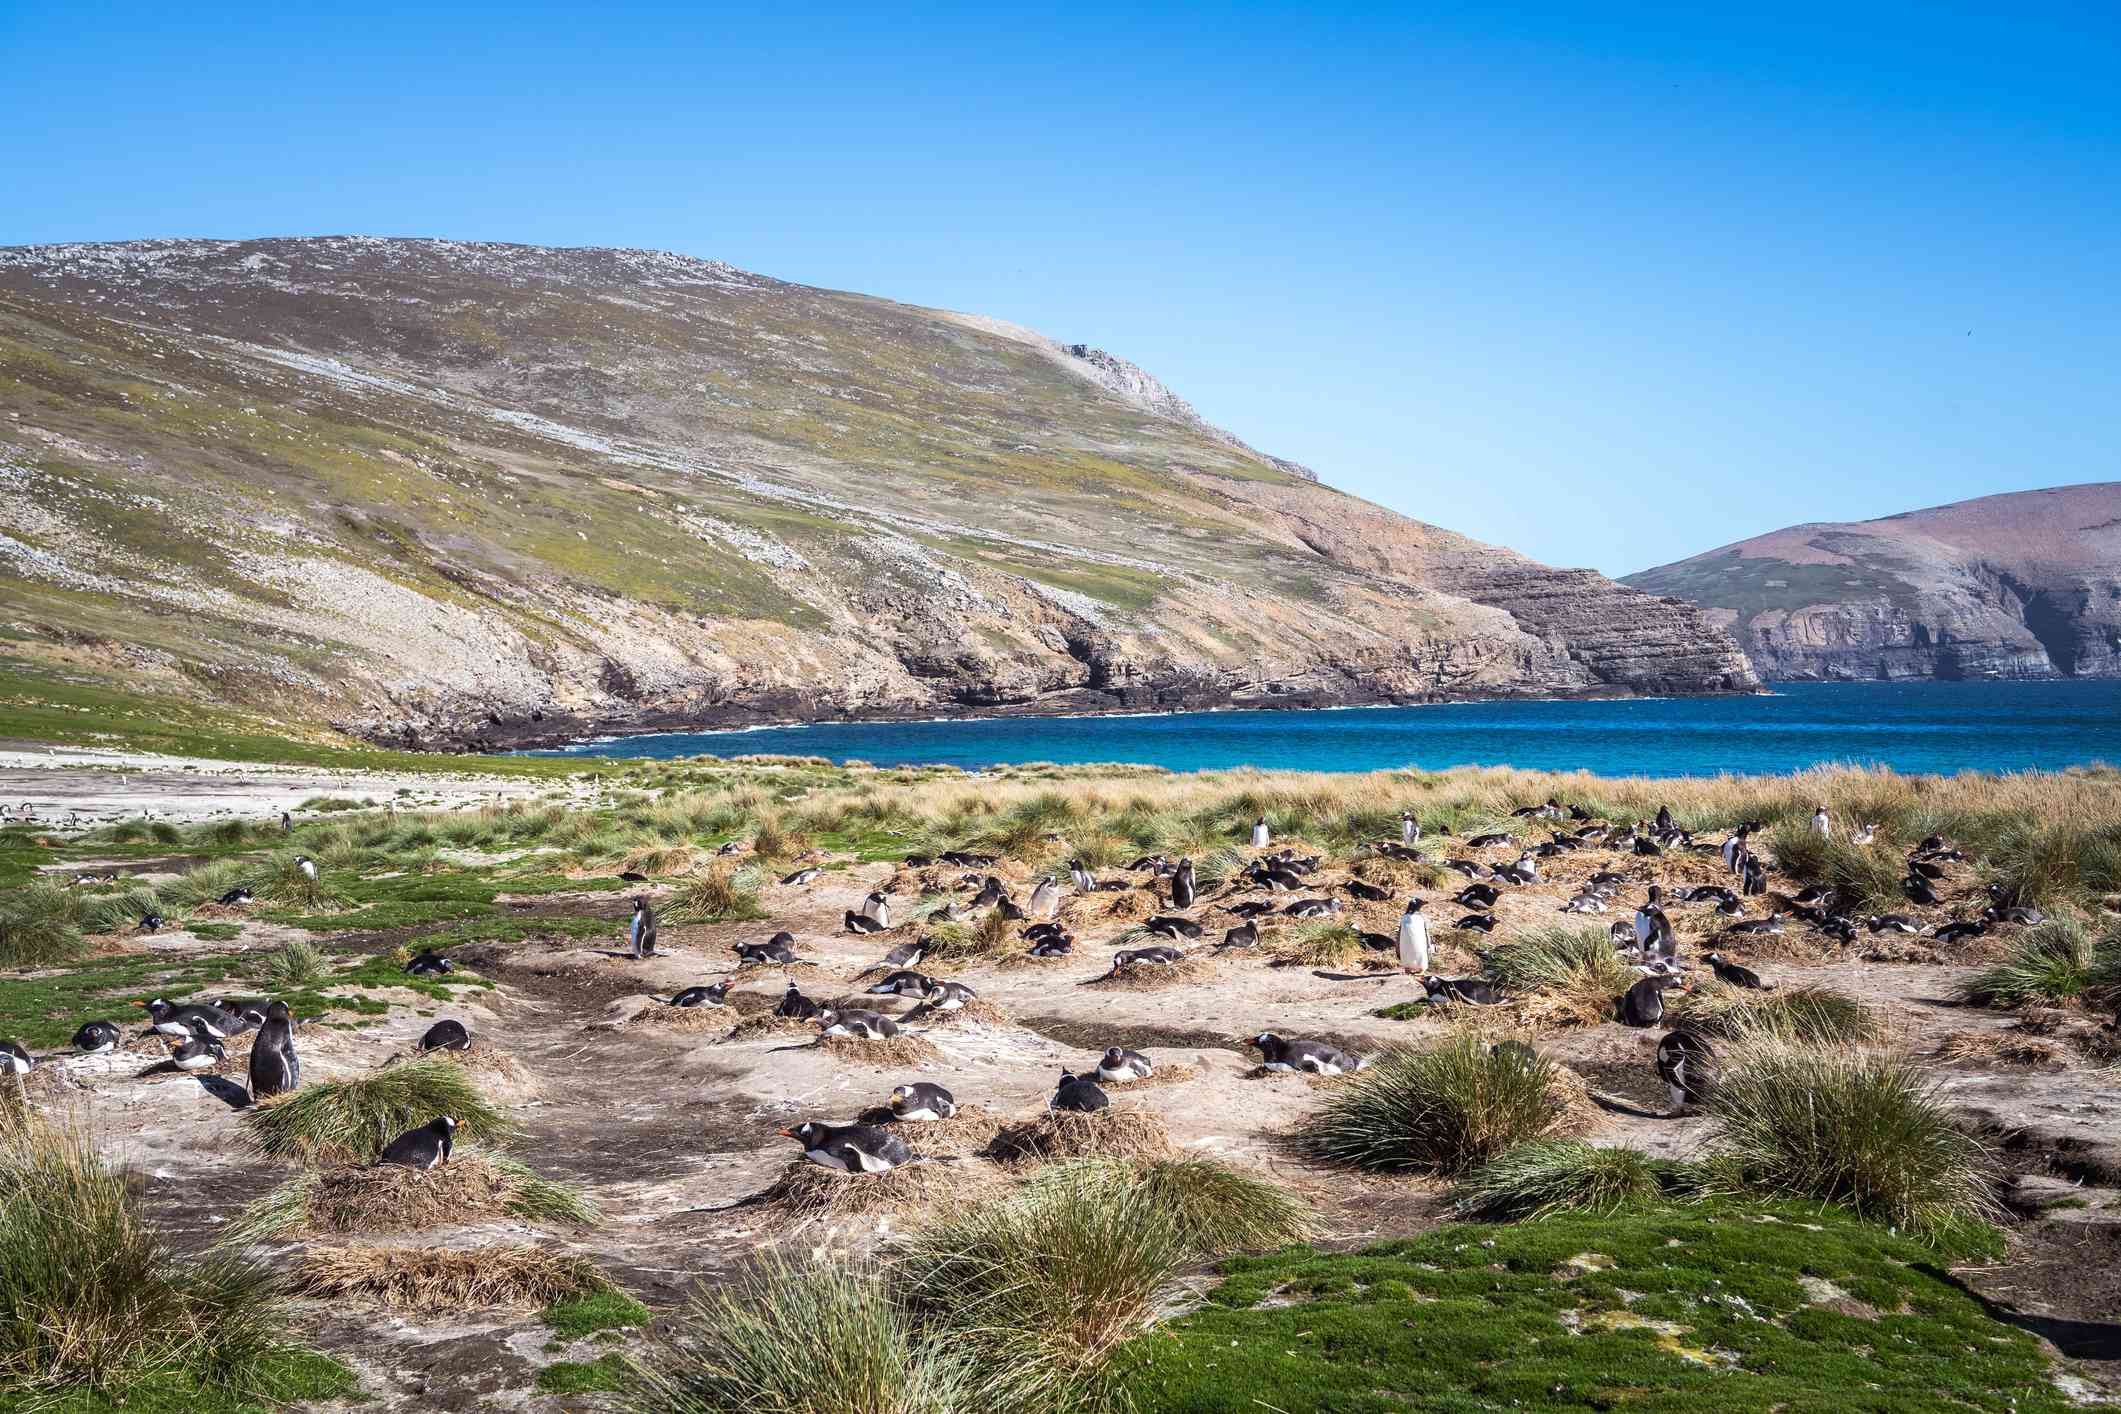 Una colonia de pingüinos papúa anida entre mechones de hierba en una playa